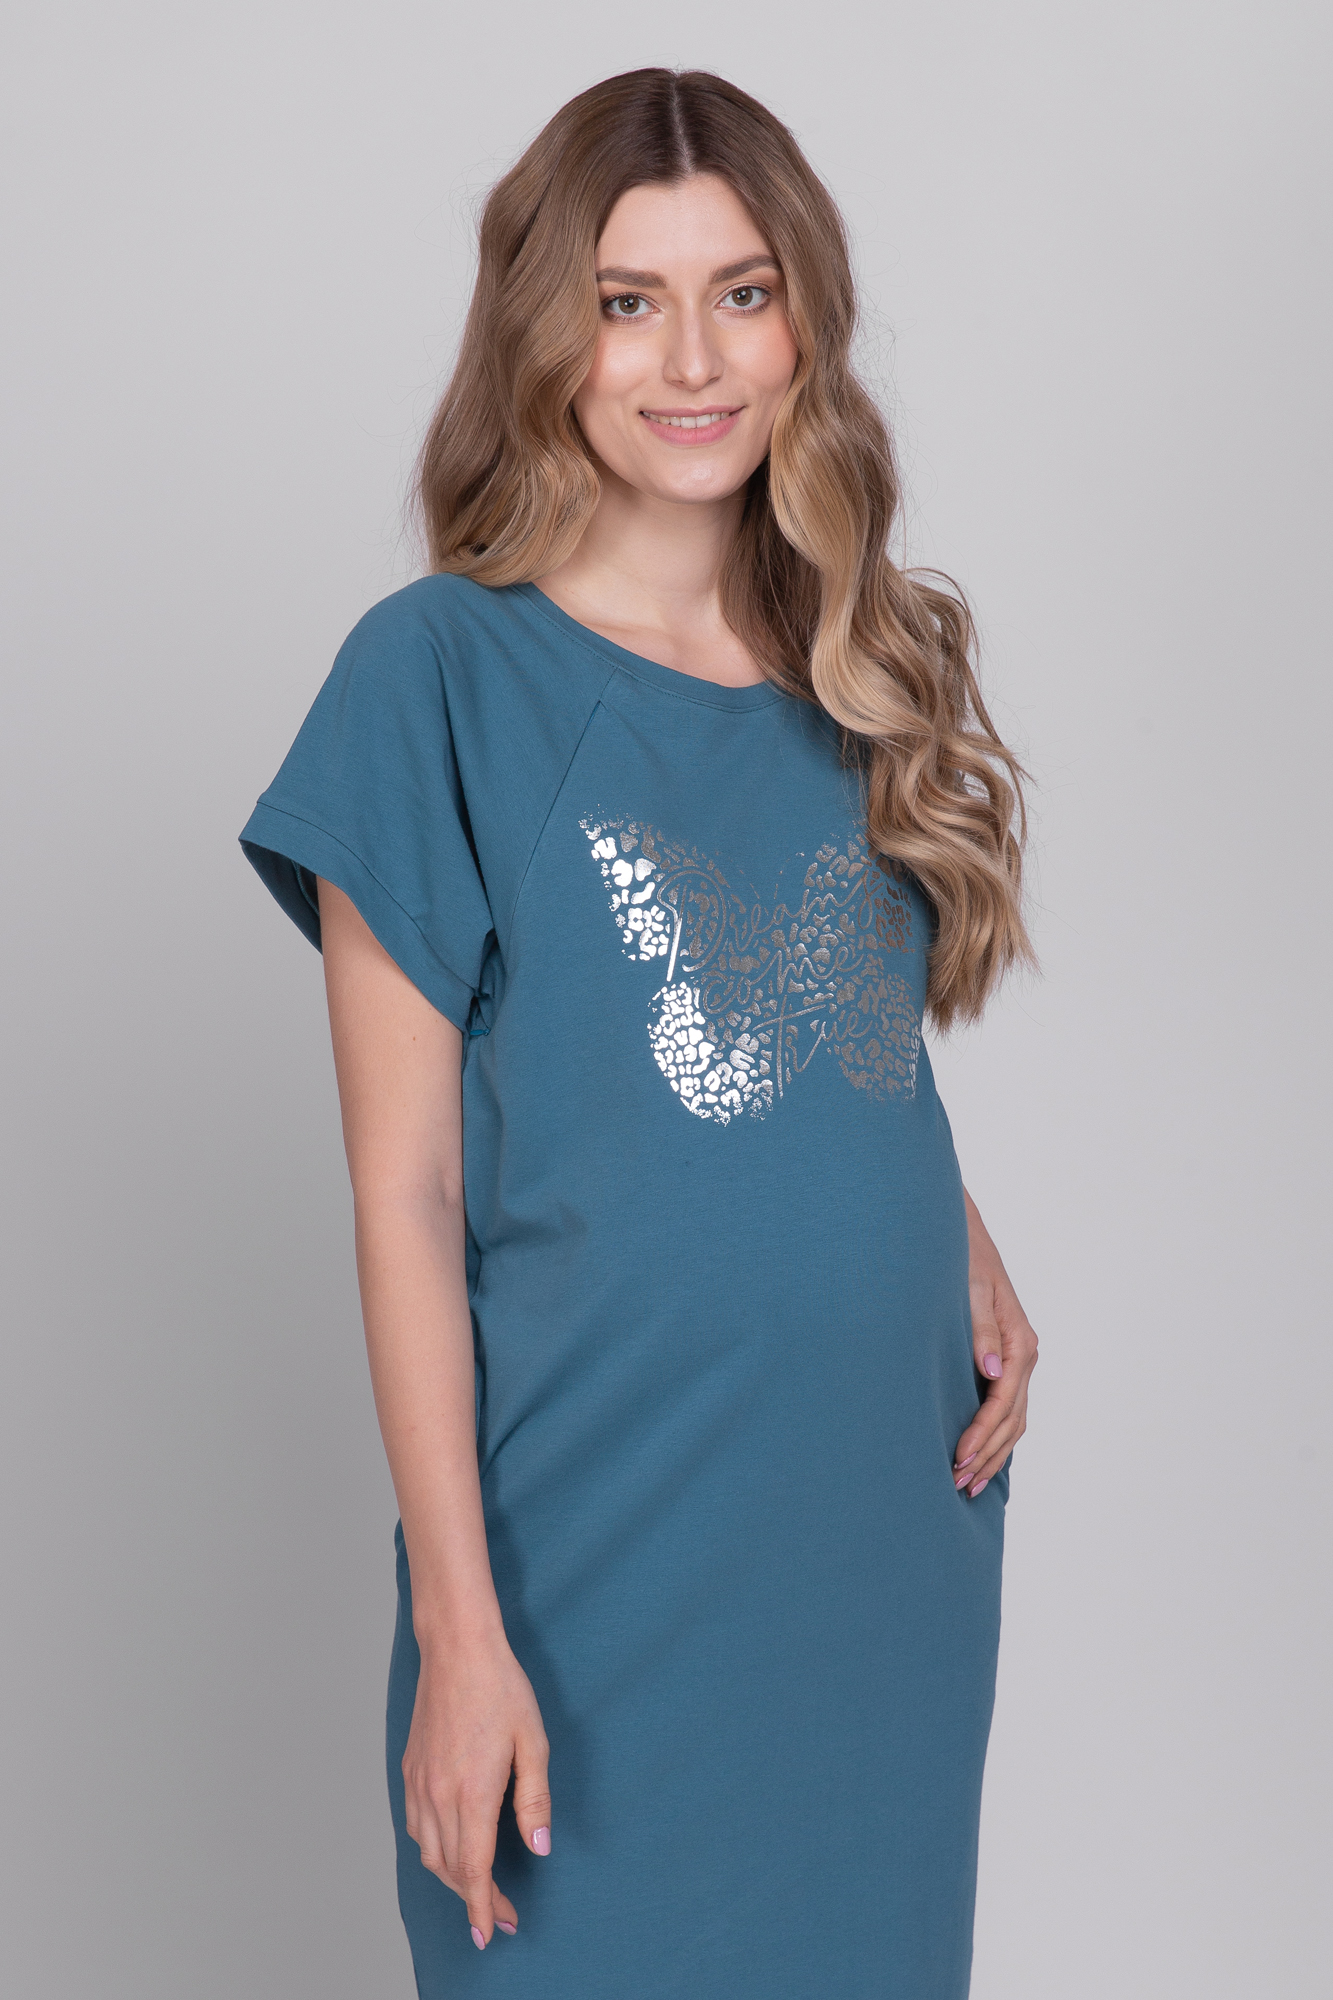 Платье для беременных женское Mama's fantasy 1706MB зеленое 48 RU